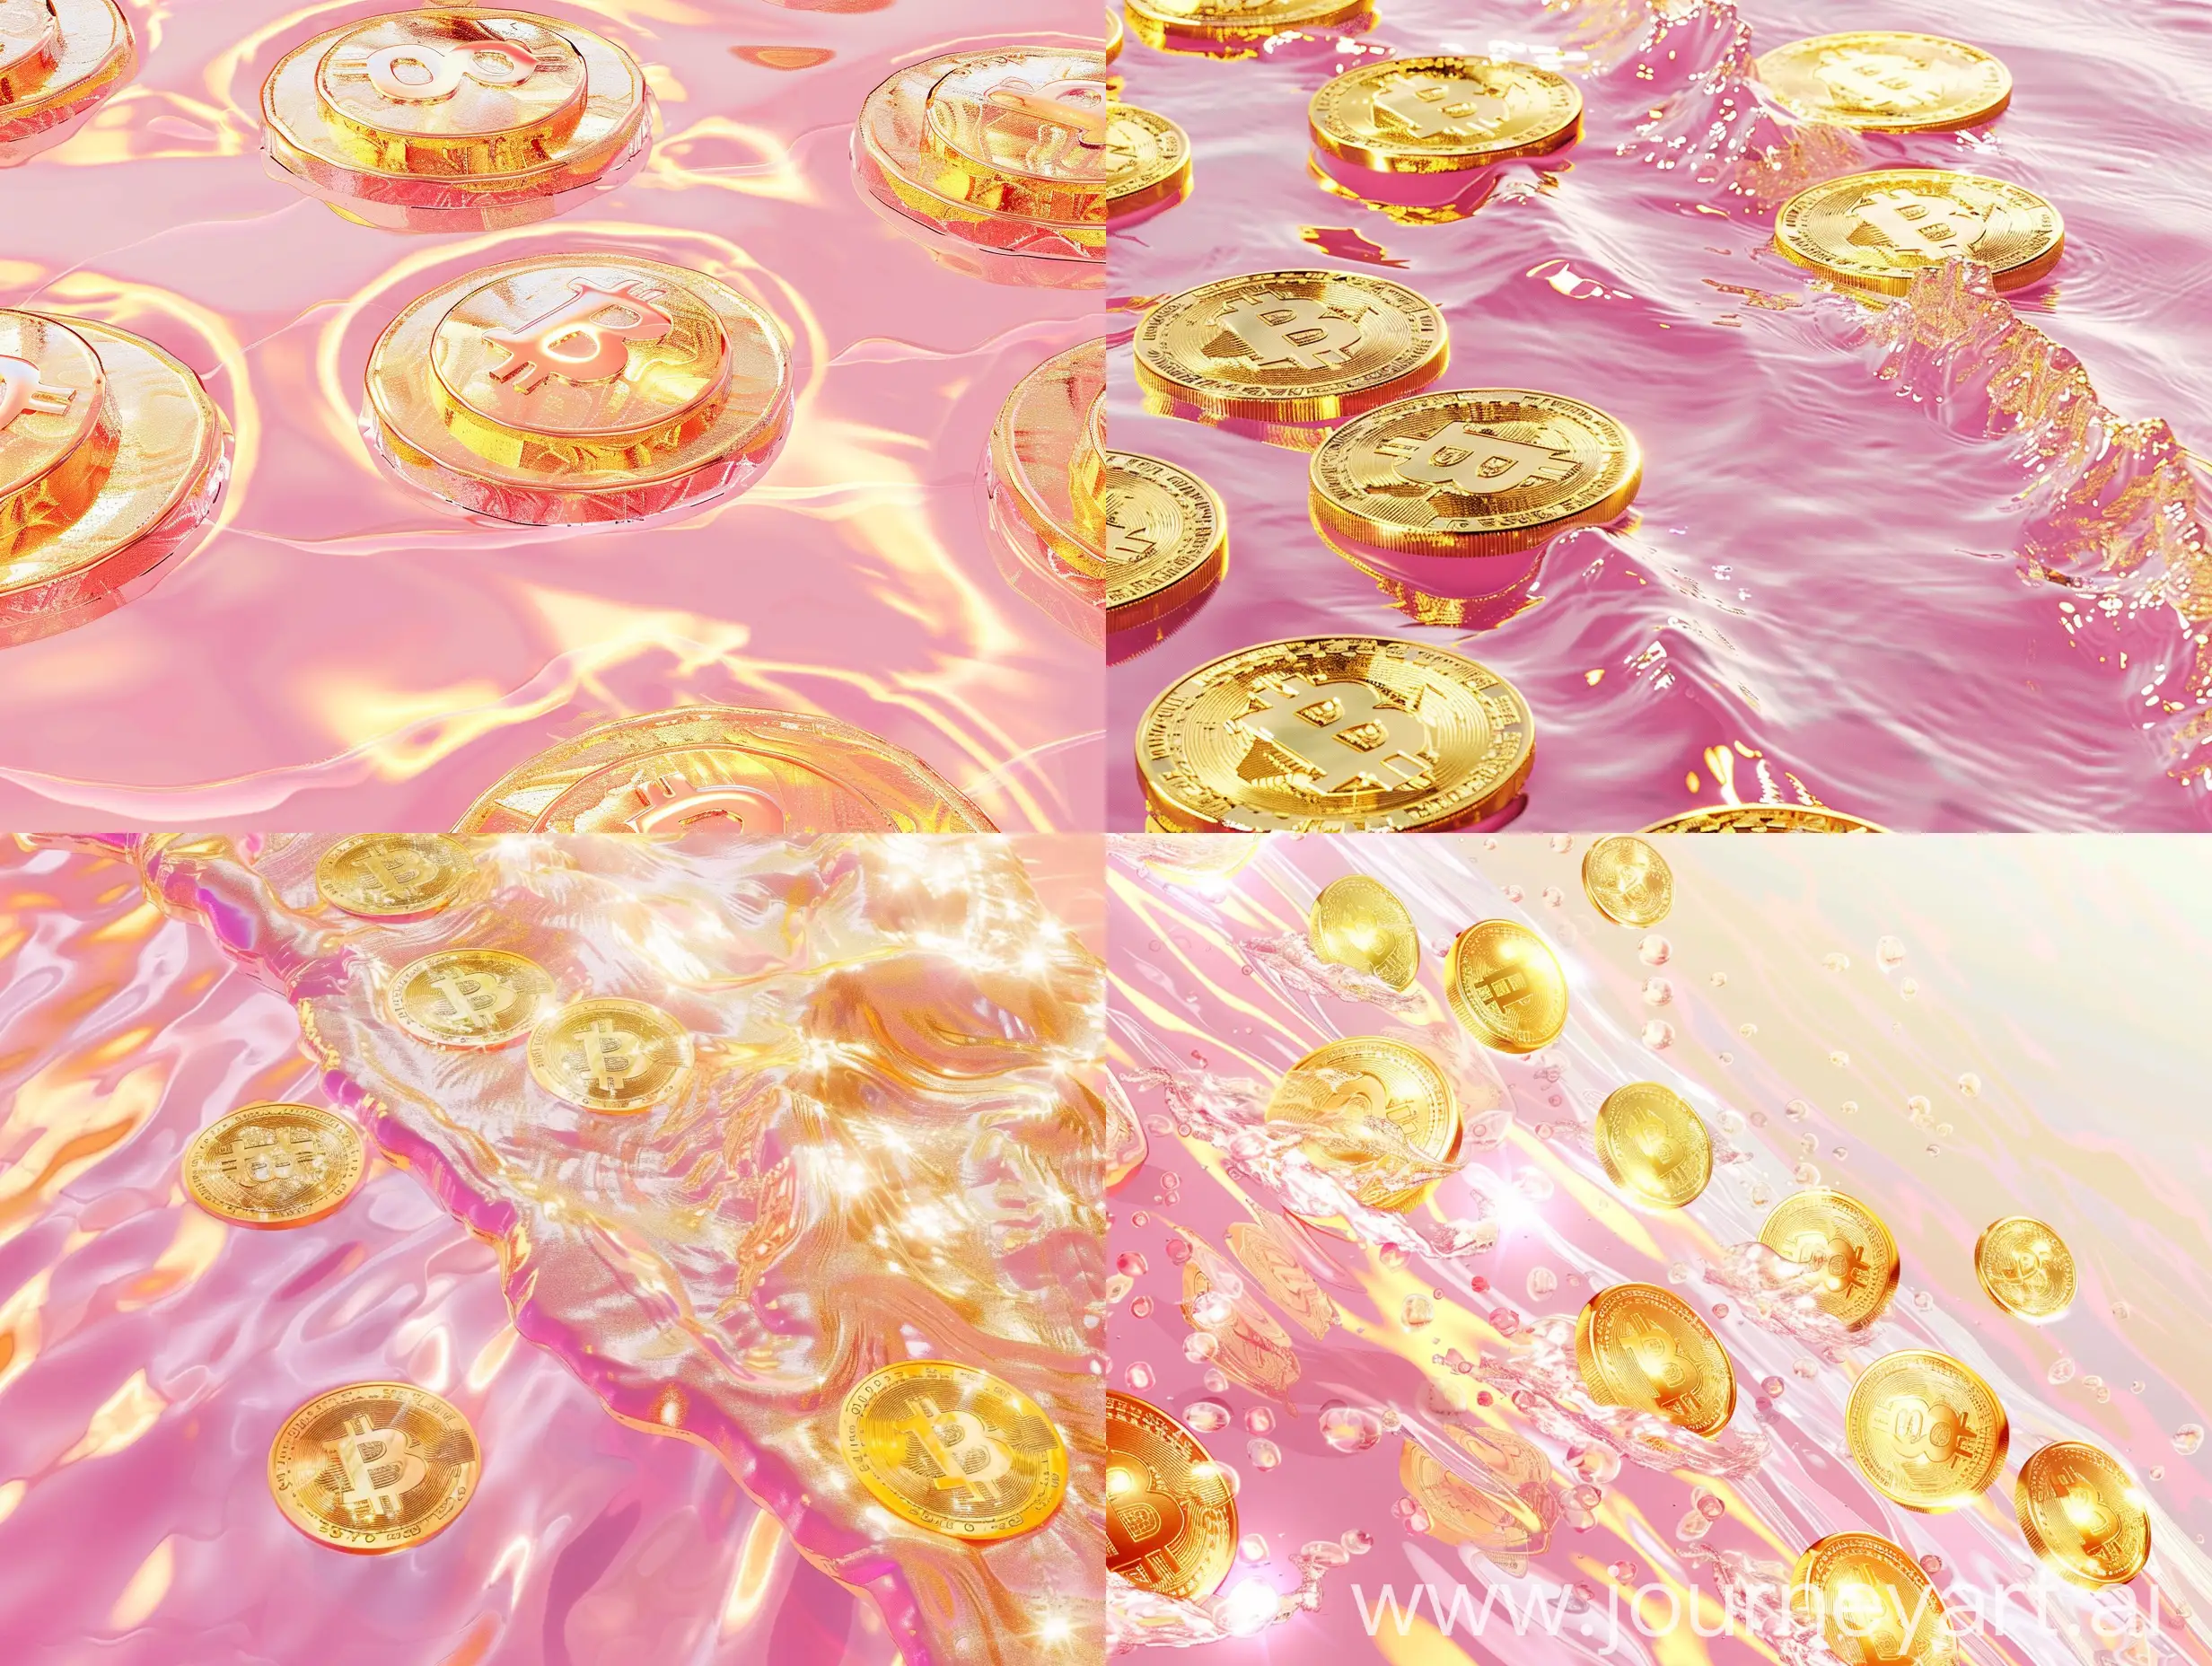 波光粼粼的水是粉色和金色的，水中有10个大金币，风格逼真，梦幻主义，浅金色和金色，斜线构图，超清晰 这次的效果就很完美